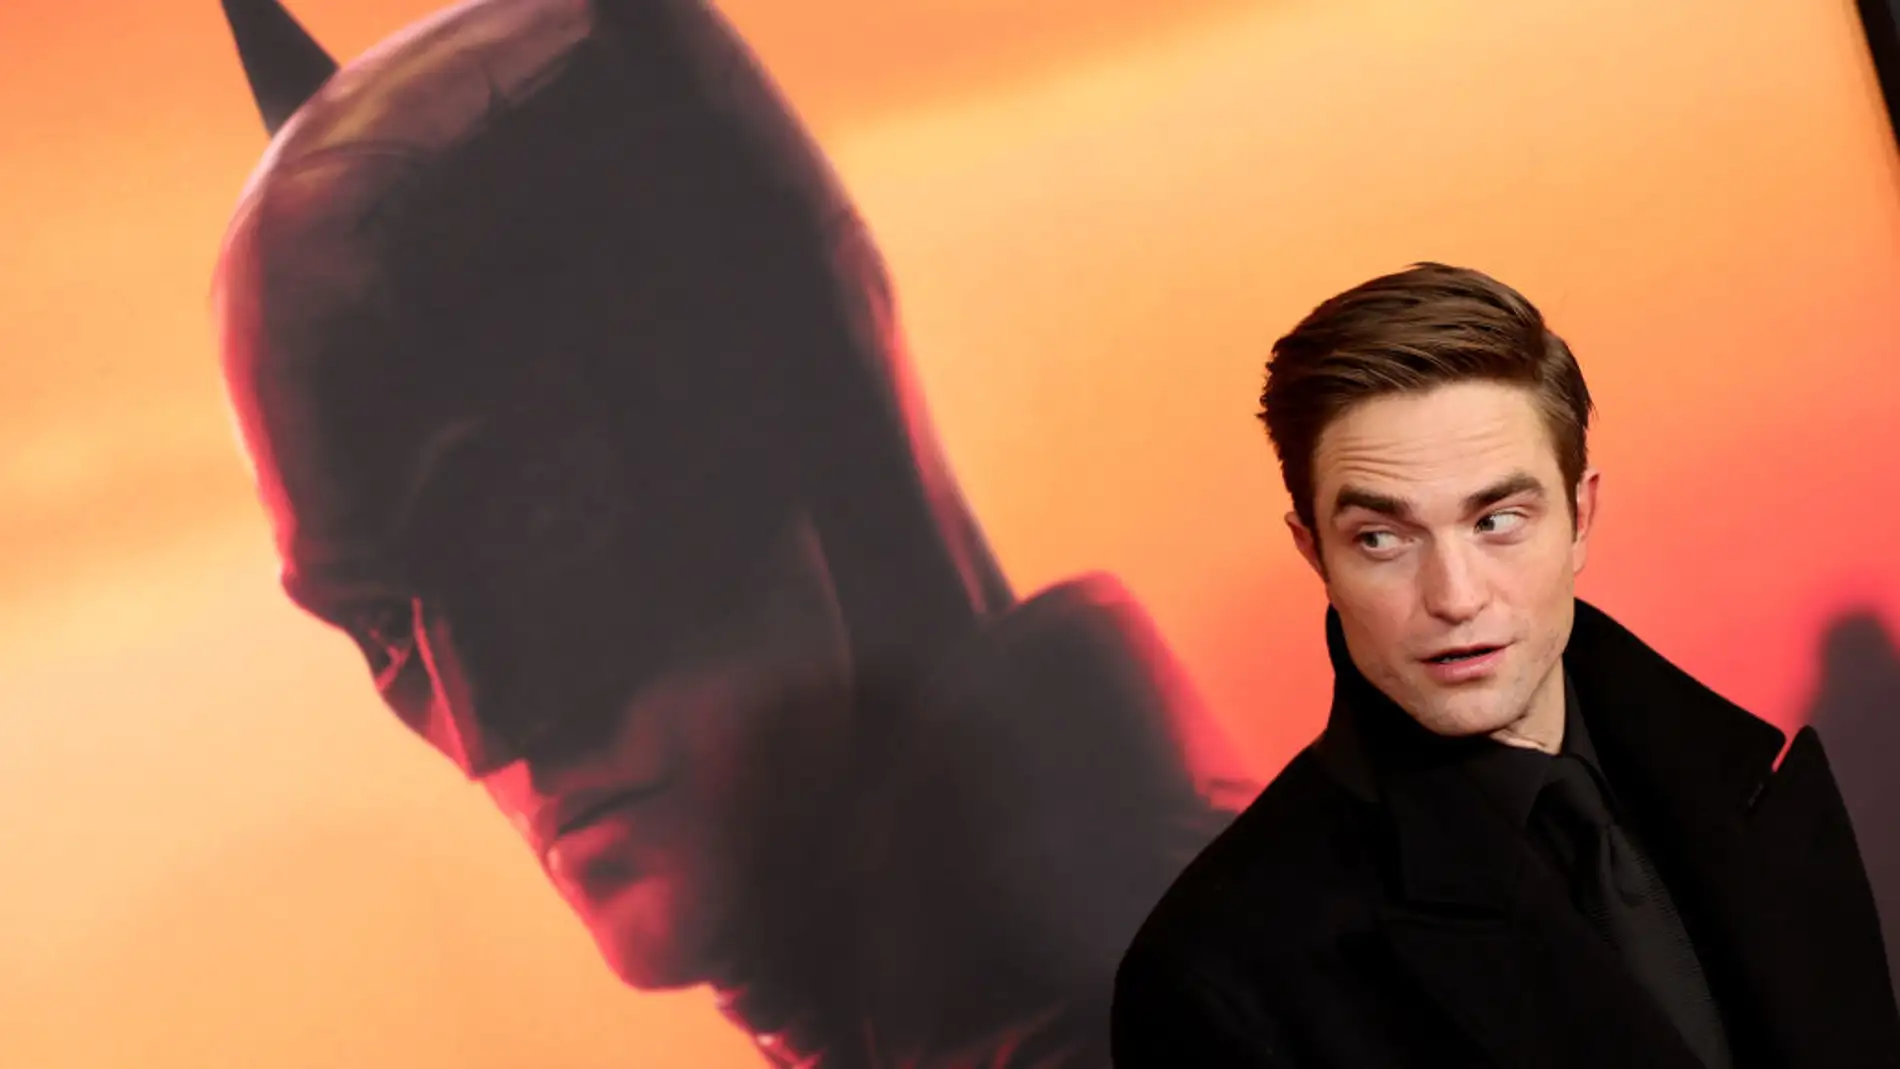 Robert Pattinson admite que robó un objeto del set de rodaje de 'The Batman'